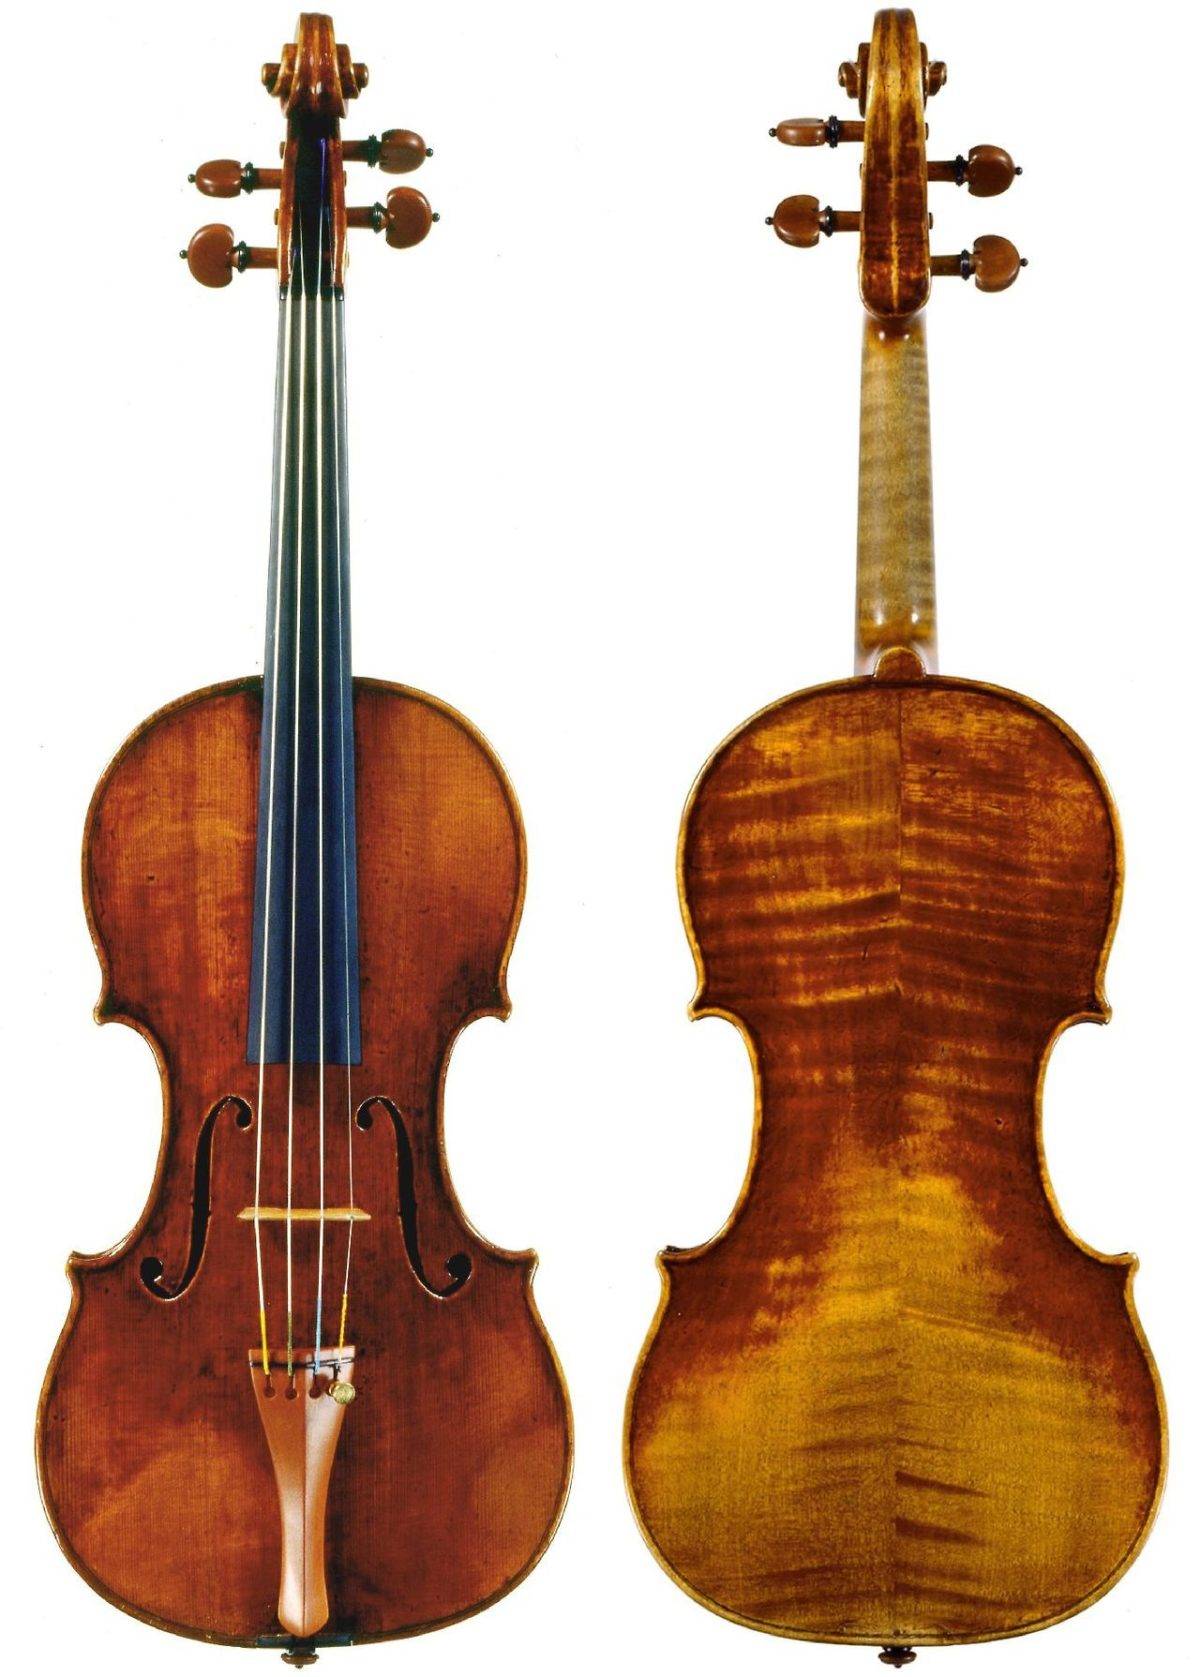 Identifican un violín Guarneri en Italia gracias a una foto de WhatsApp